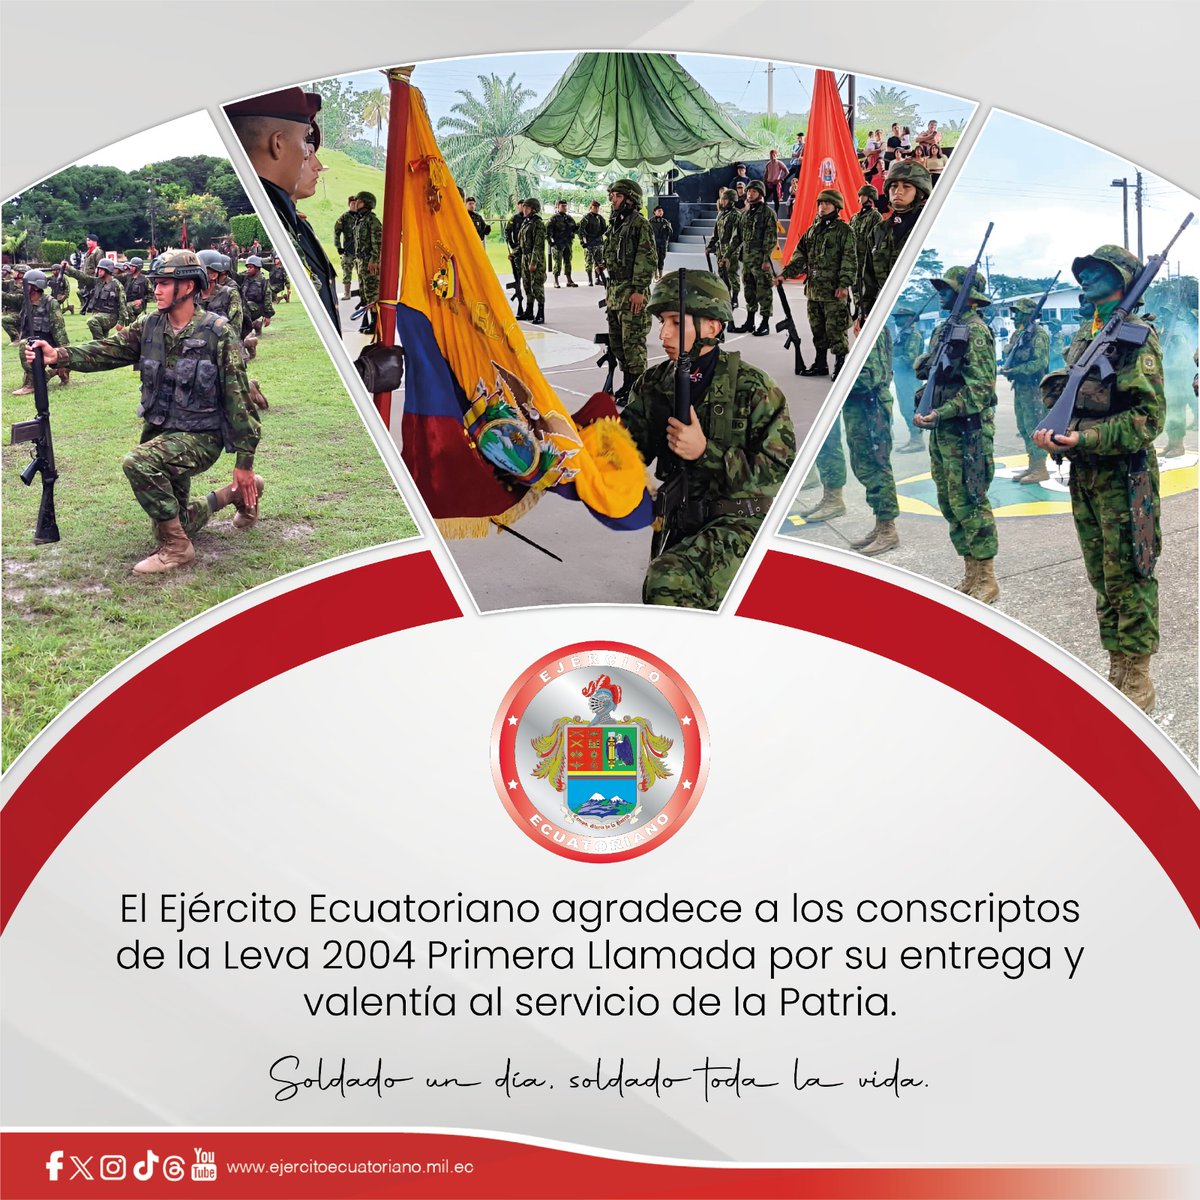 El Ejército Ecuatoriano expresa su agradecimiento y a la vez, reconoce la tenacidad, el trabajo y valor entregados por los jóvenes ecuatorianos, que este día se gradúan como Soldados de Reserva. #SoldadoUnDíaSoldadoTodaLaVida #EjércitoECU